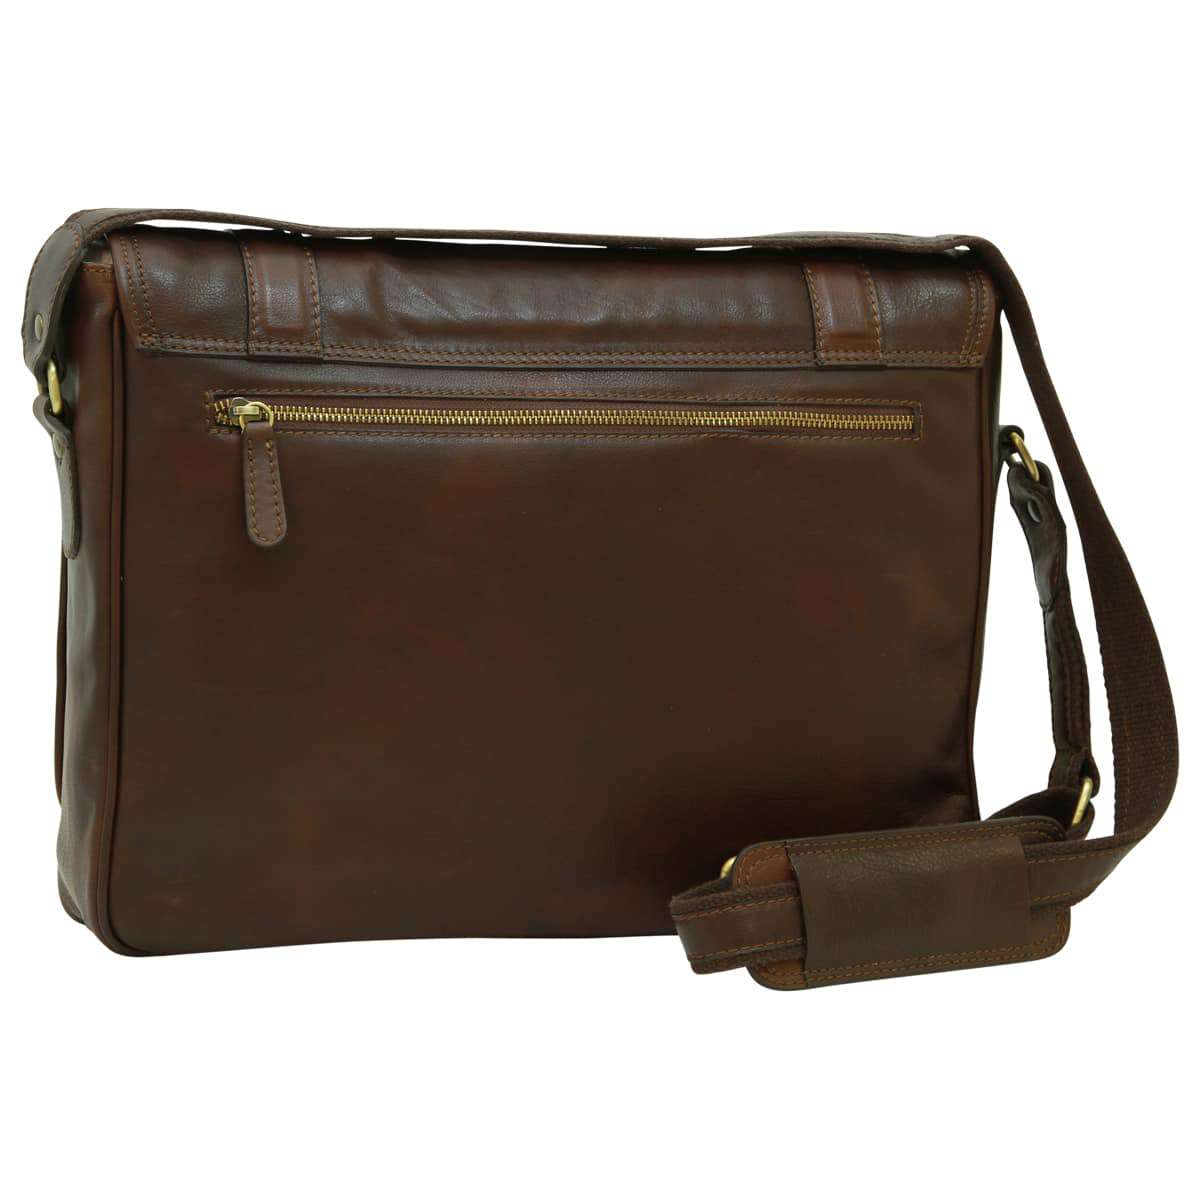 Soft Calfskin Leather Messenger Bag - Dark Brown | 030491TM UK | Old Angler Firenze